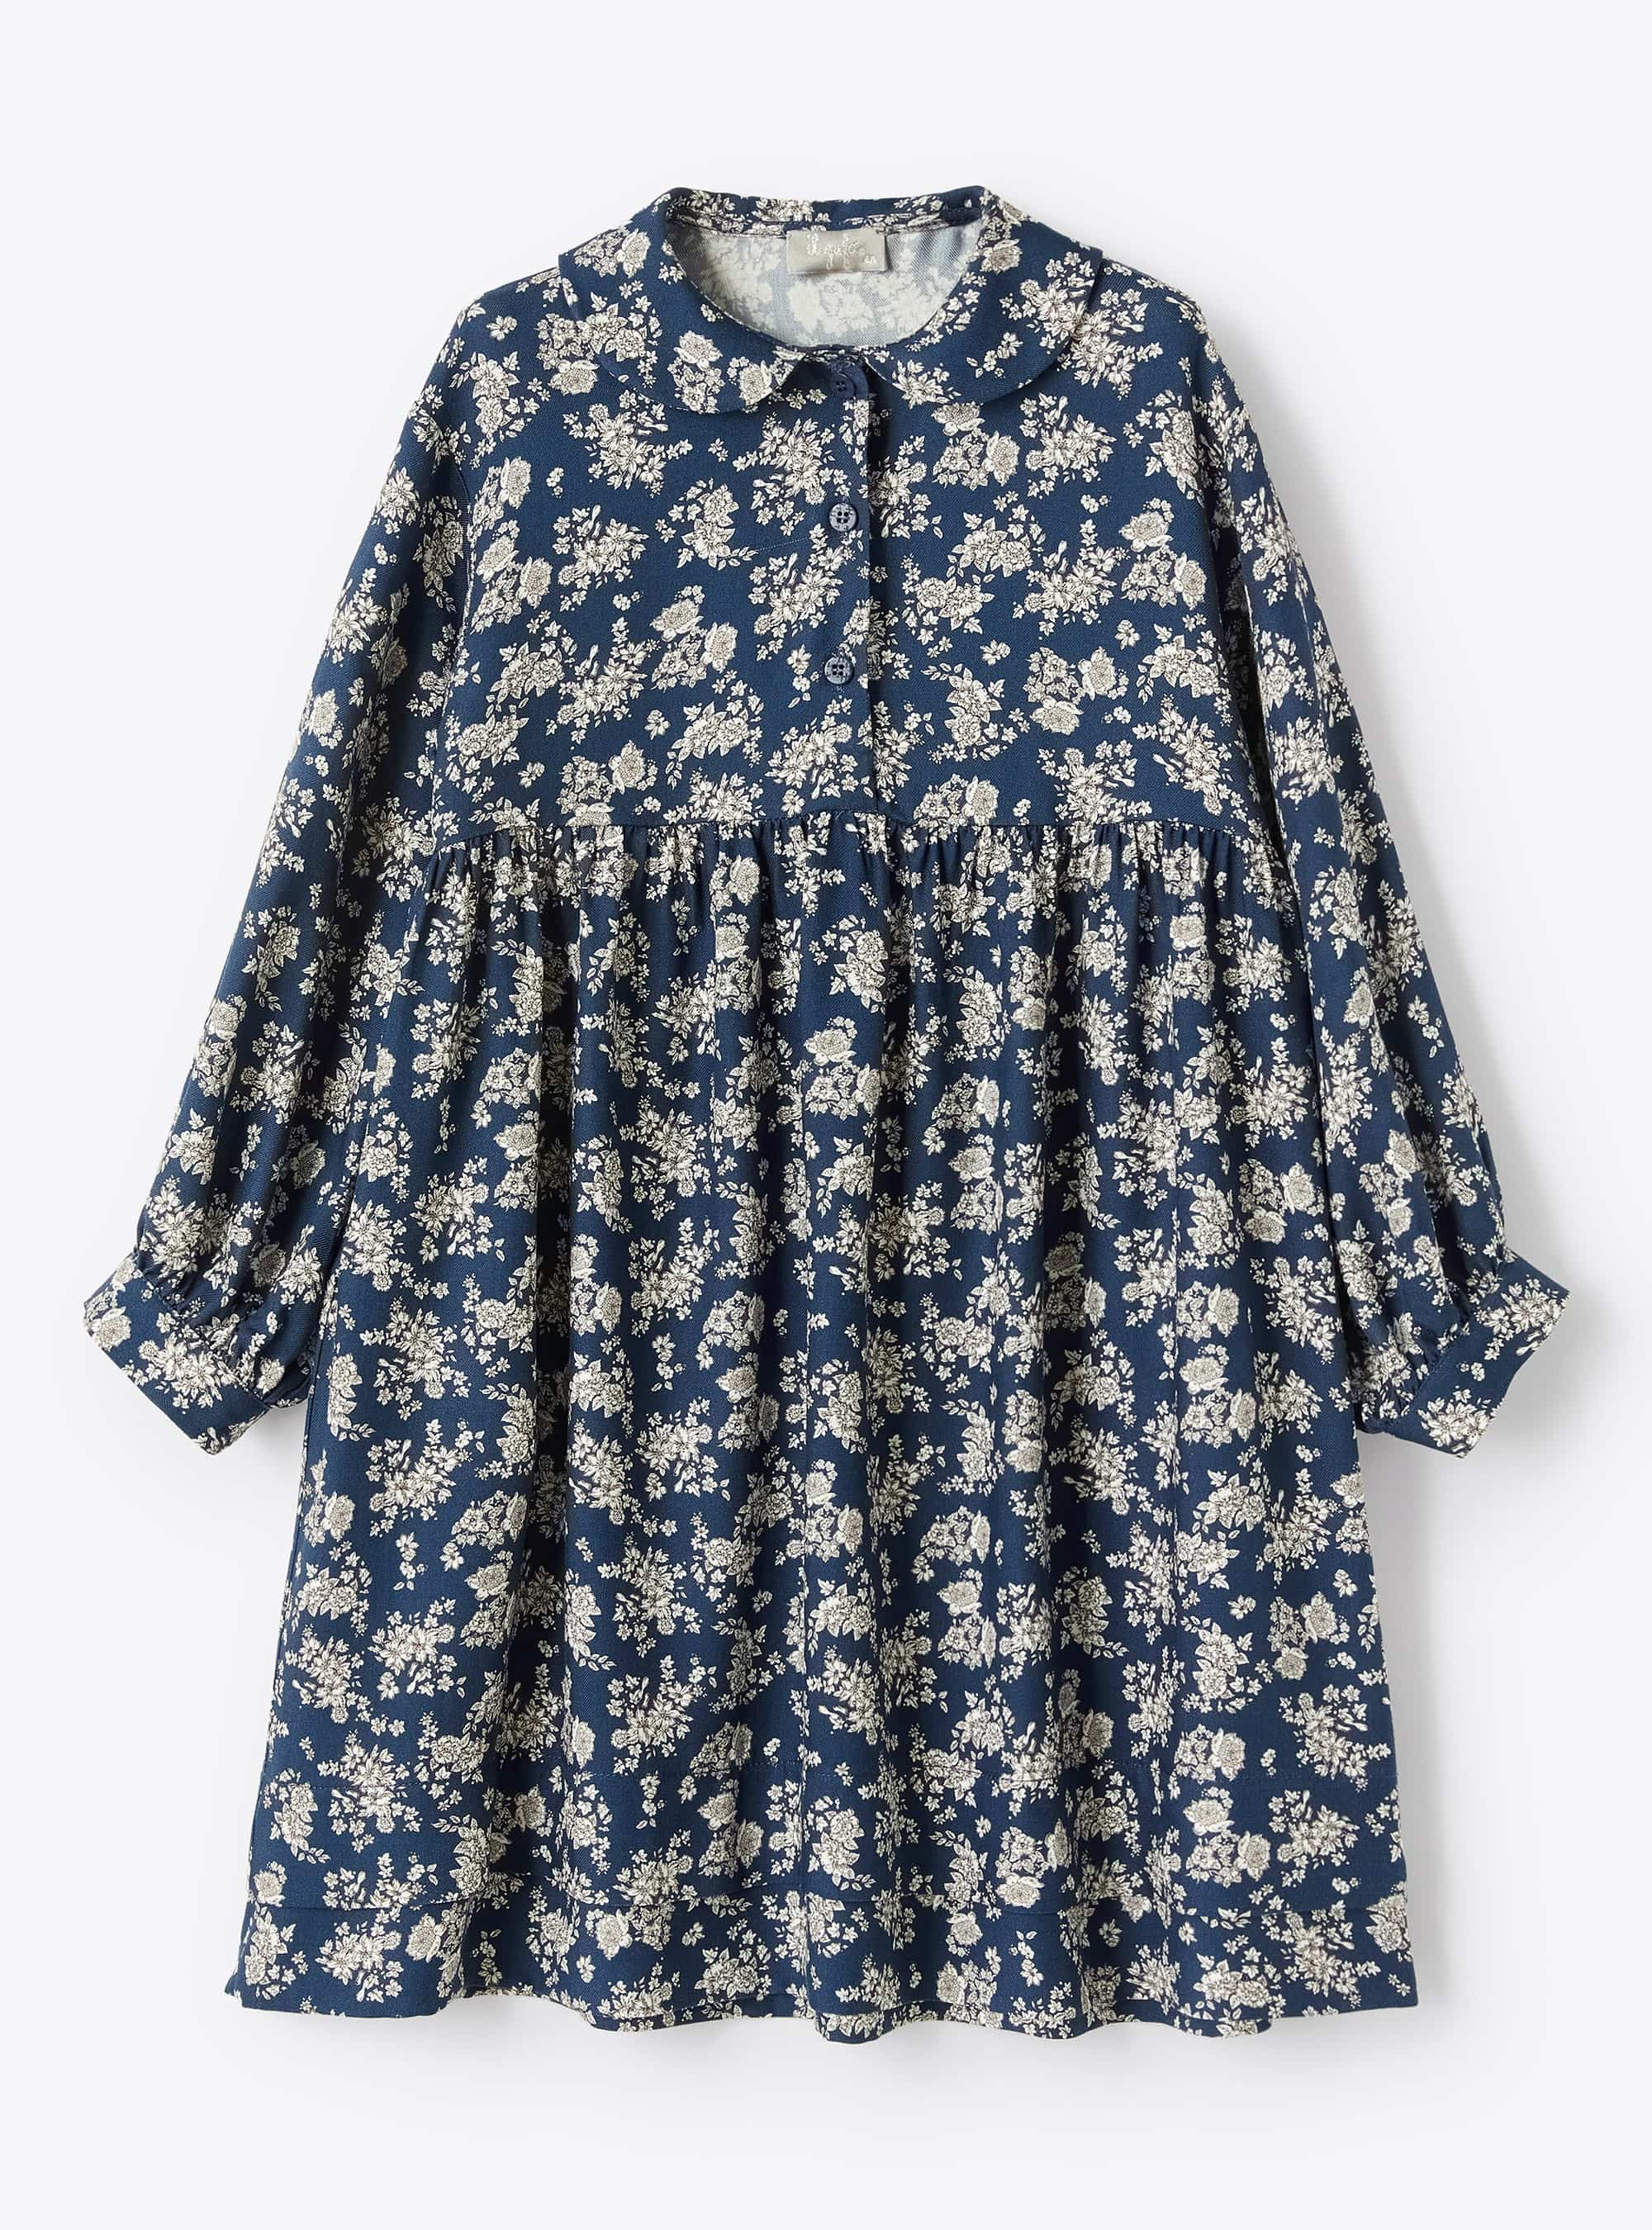 Dunkelblaues Kleid mit Blumendruck - Kleider - Il Gufo